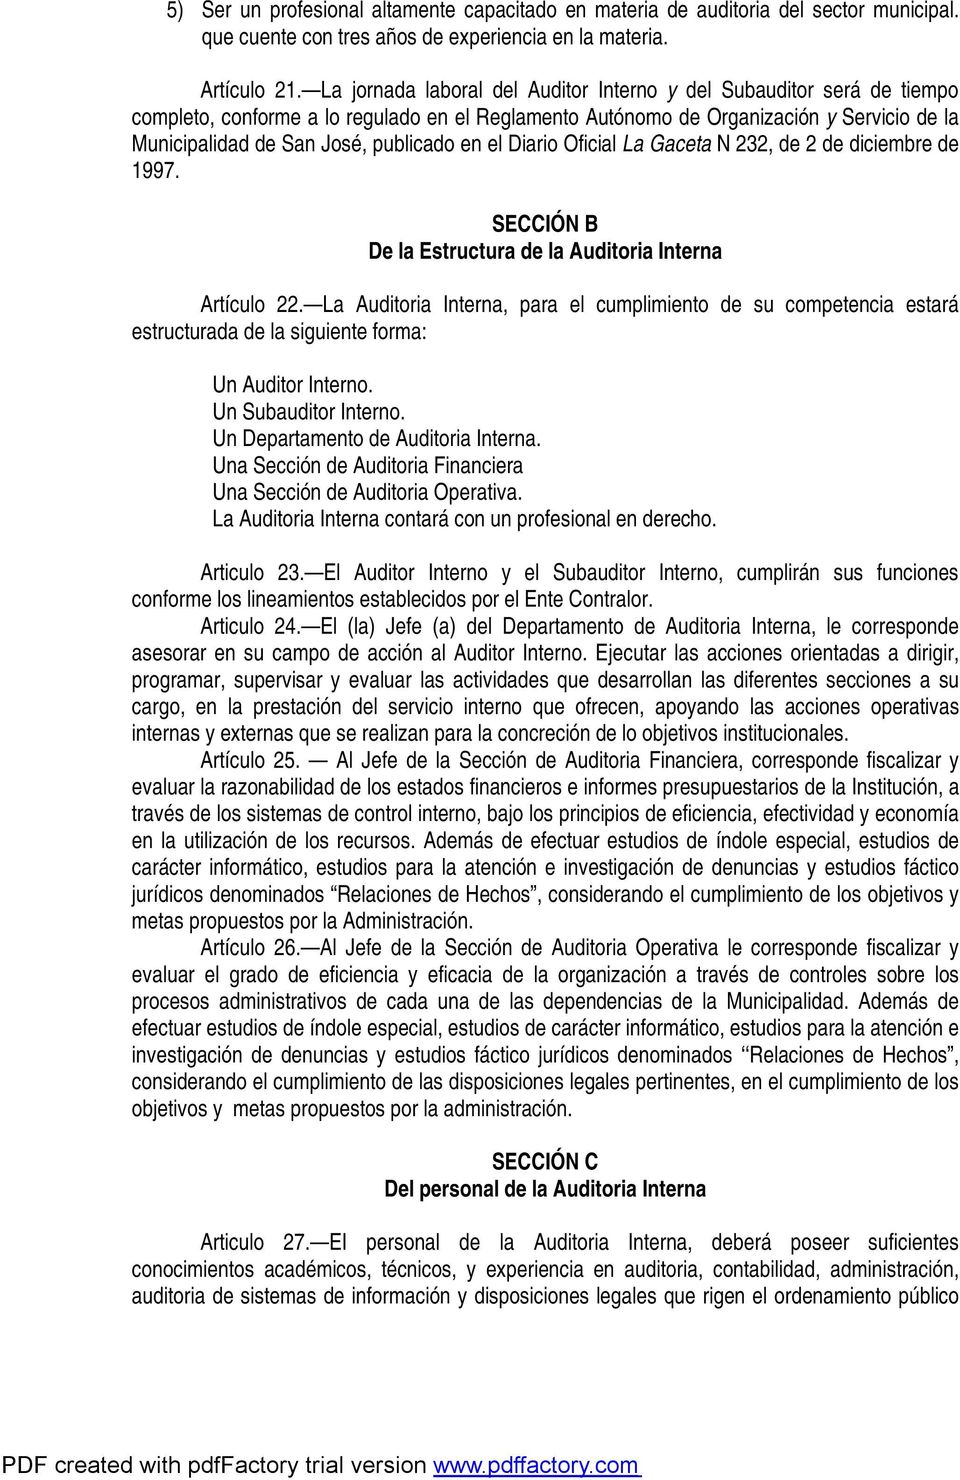 en el Diario Oficial La Gaceta N 232, de 2 de diciembre de 1997. SECCIÓN B De la Estructura de la Auditoria Interna Artículo 22.